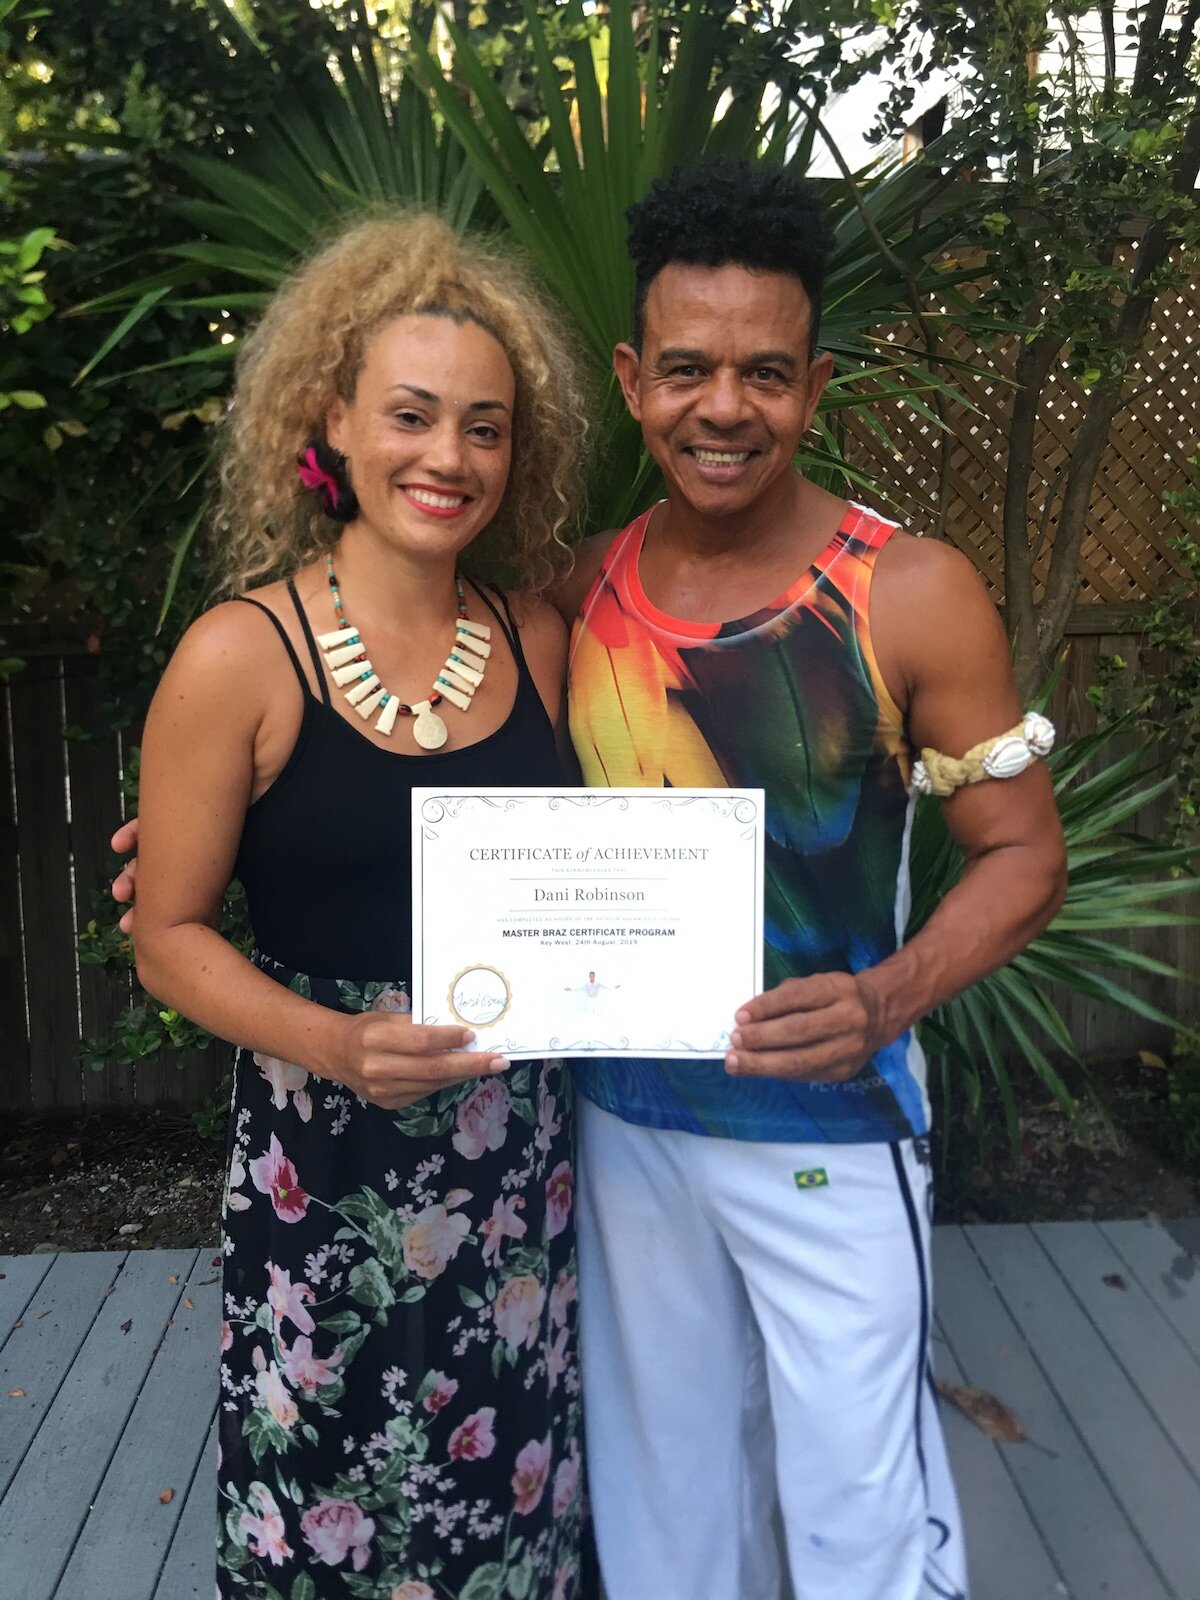 Dani Robinson Completes Master Braz Certificate Course 2019